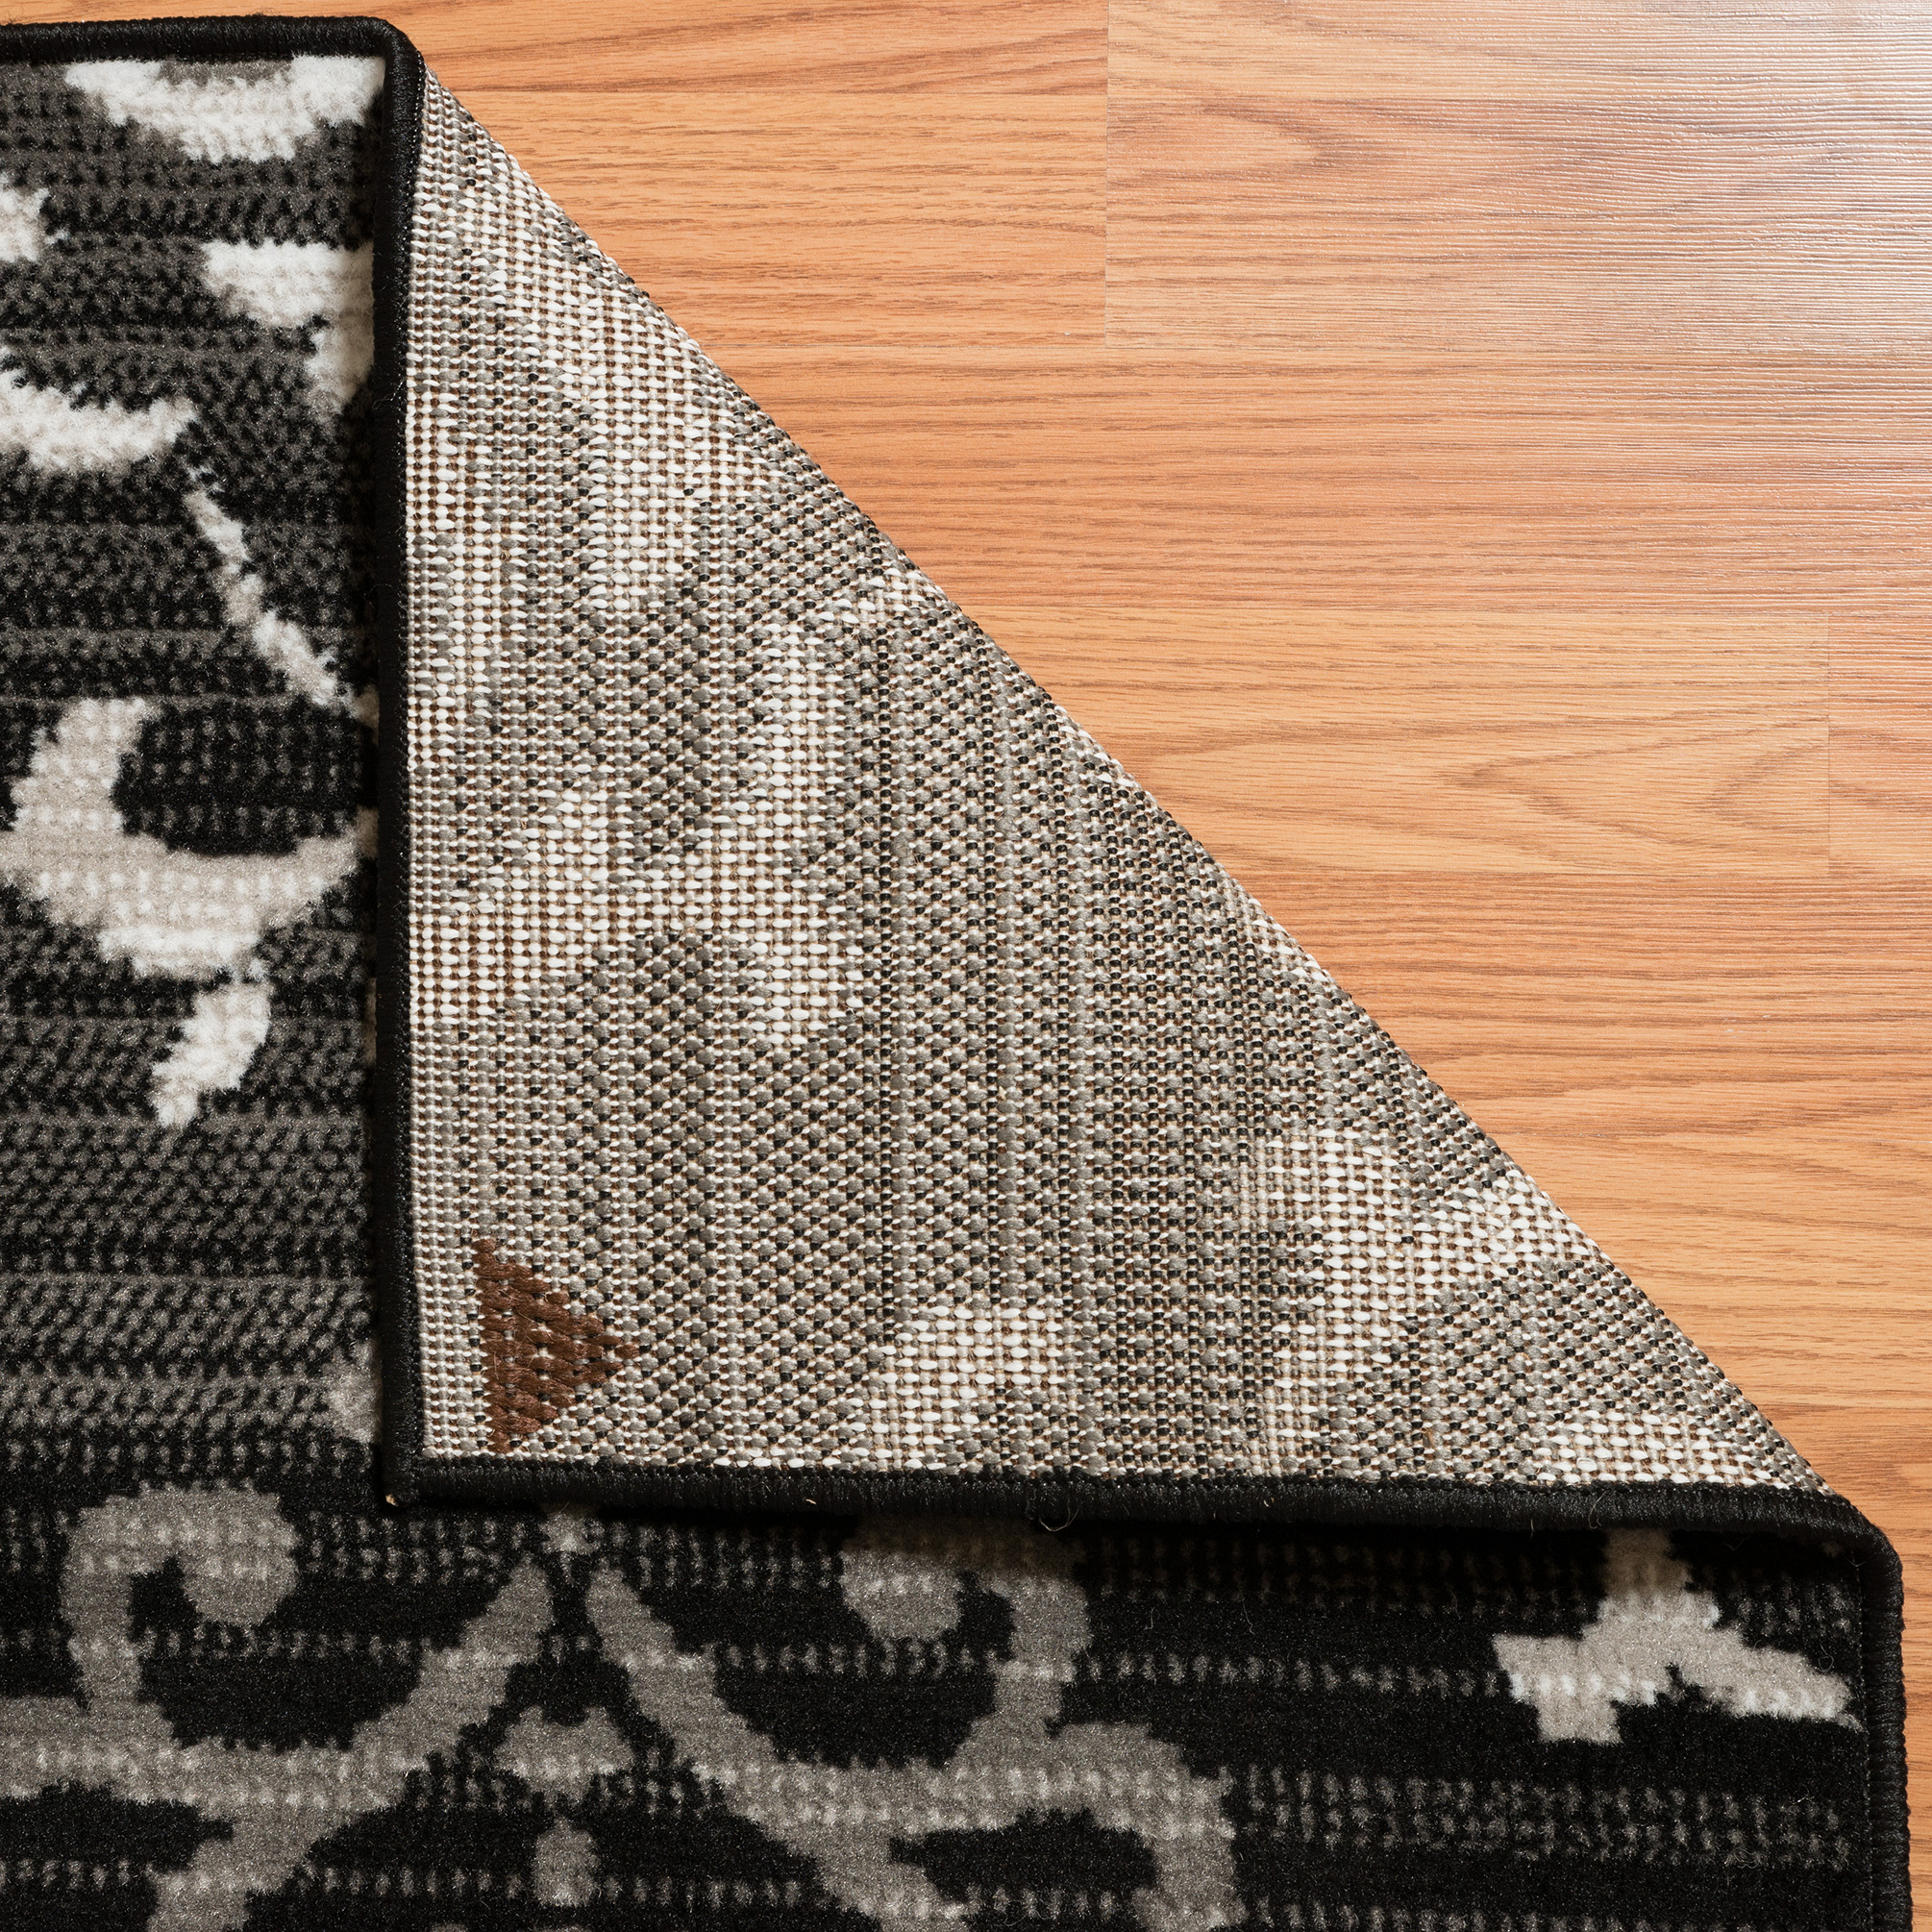 Designer Home Soft Transitional Indoor Modern Area Rug Scrolls Vines All-Over - image 3 of 5